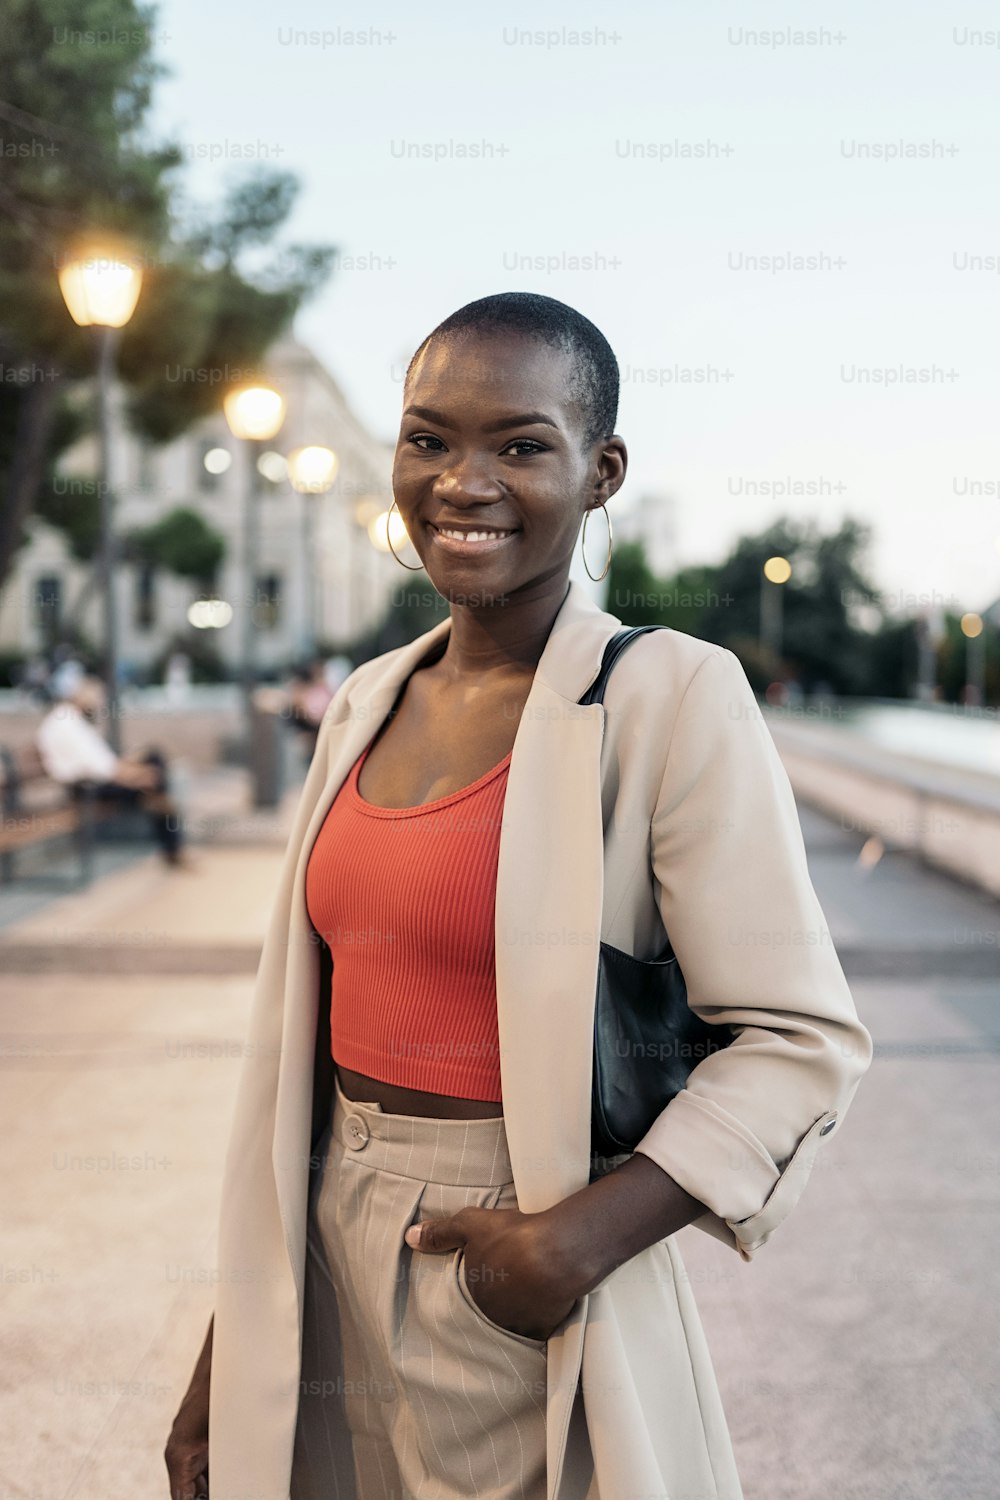 해질녘 도시에 서서 웃고 있는 패셔너블한 아프리카계 미국인 젊은 성인 여성의 정면 모습